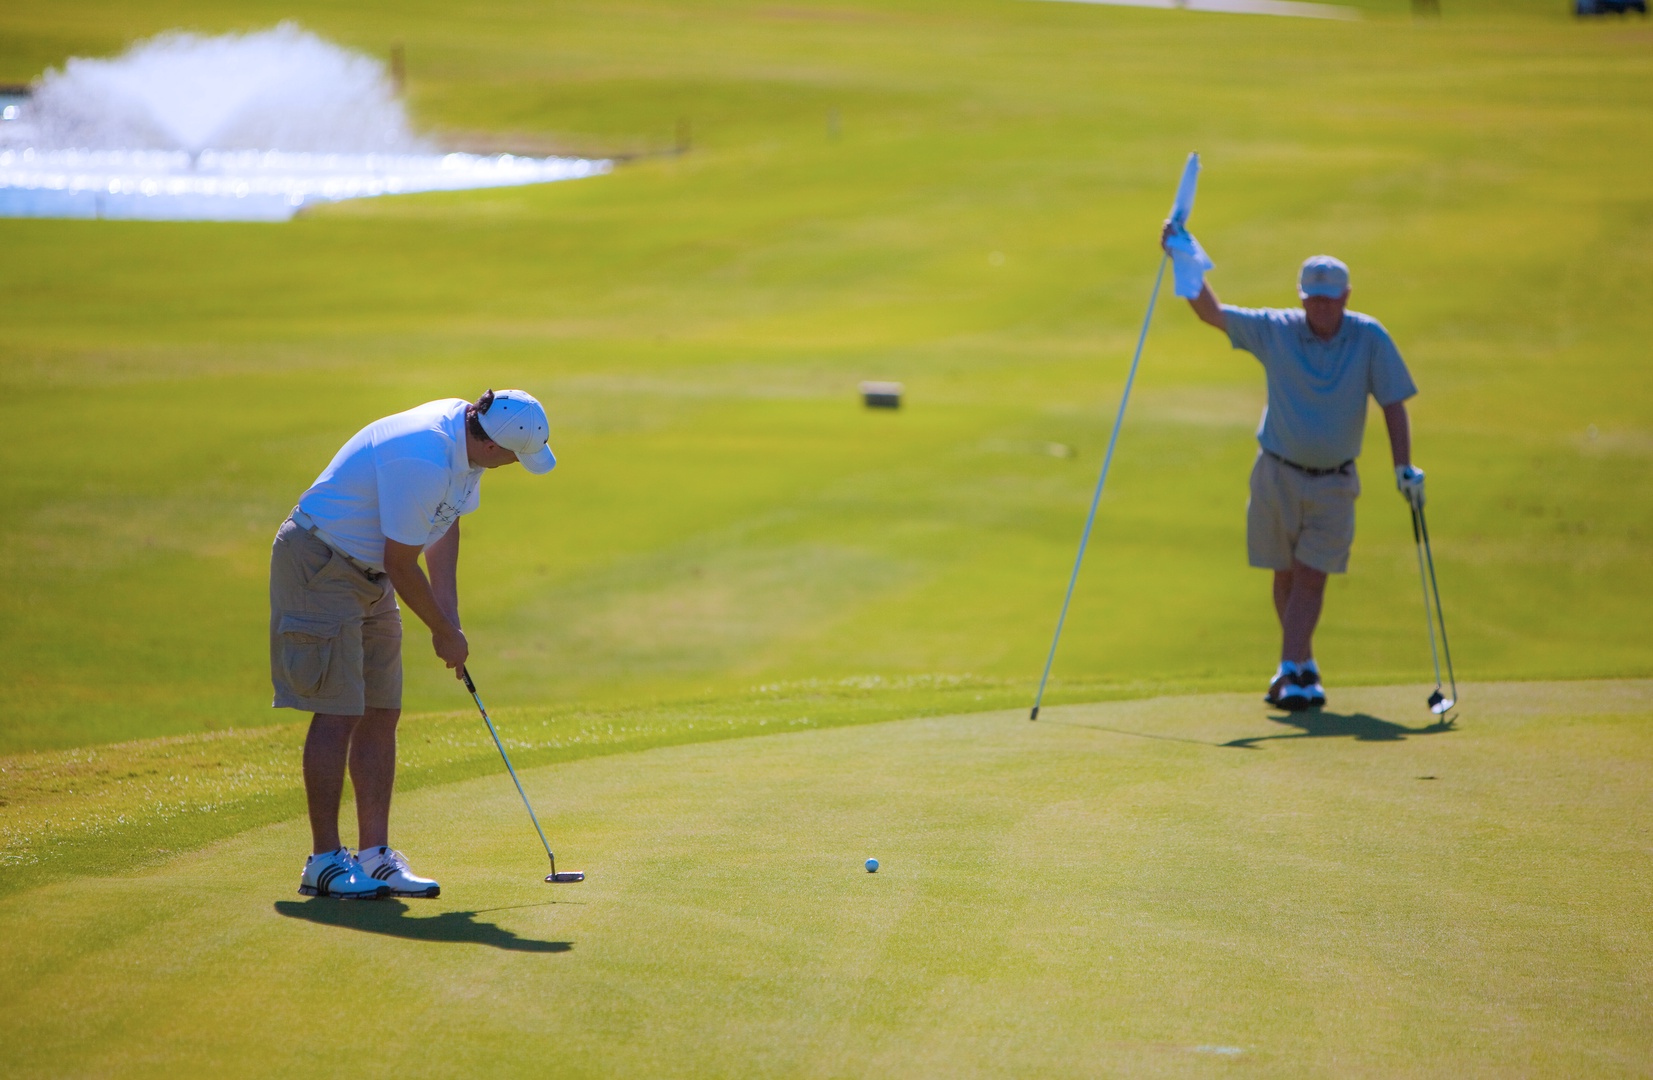 Kapolei Vacation Rentals, Kai Lani 20C - Enjoy a friendly round of golf at the Ko Olina Golf Course.